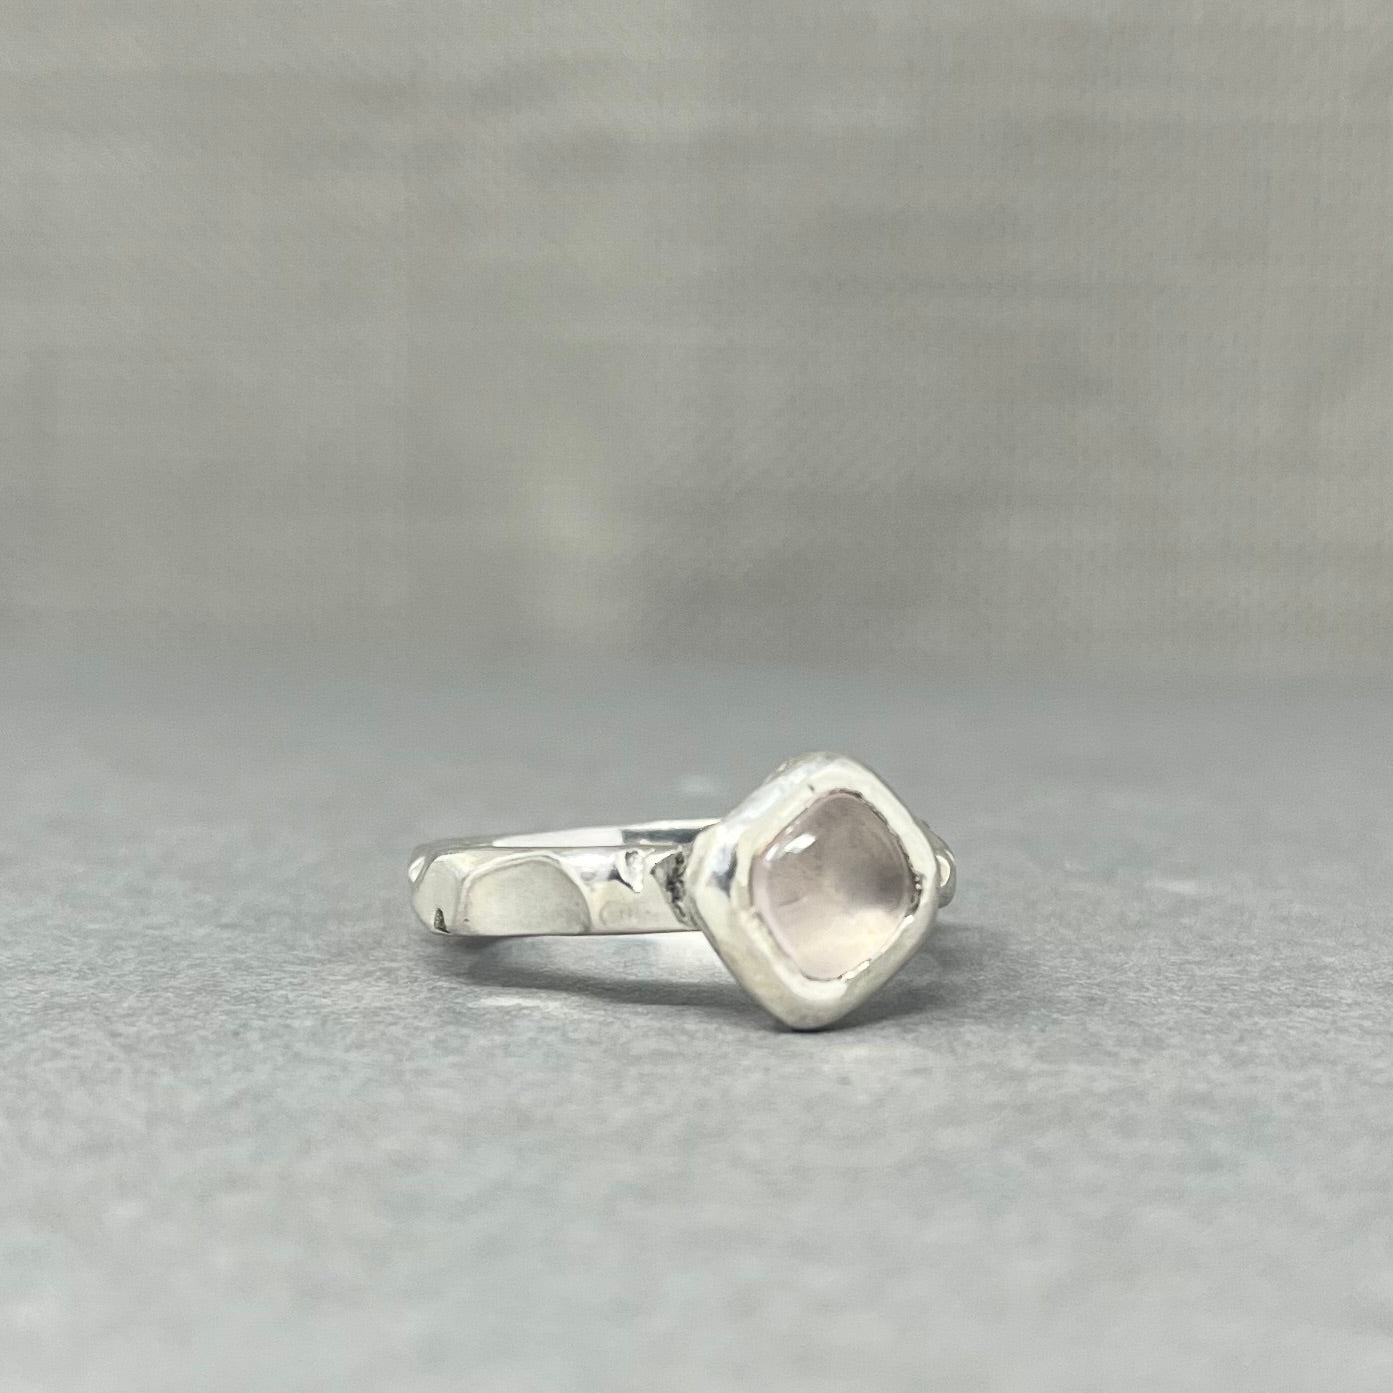 Silver Rose Quartz Ring